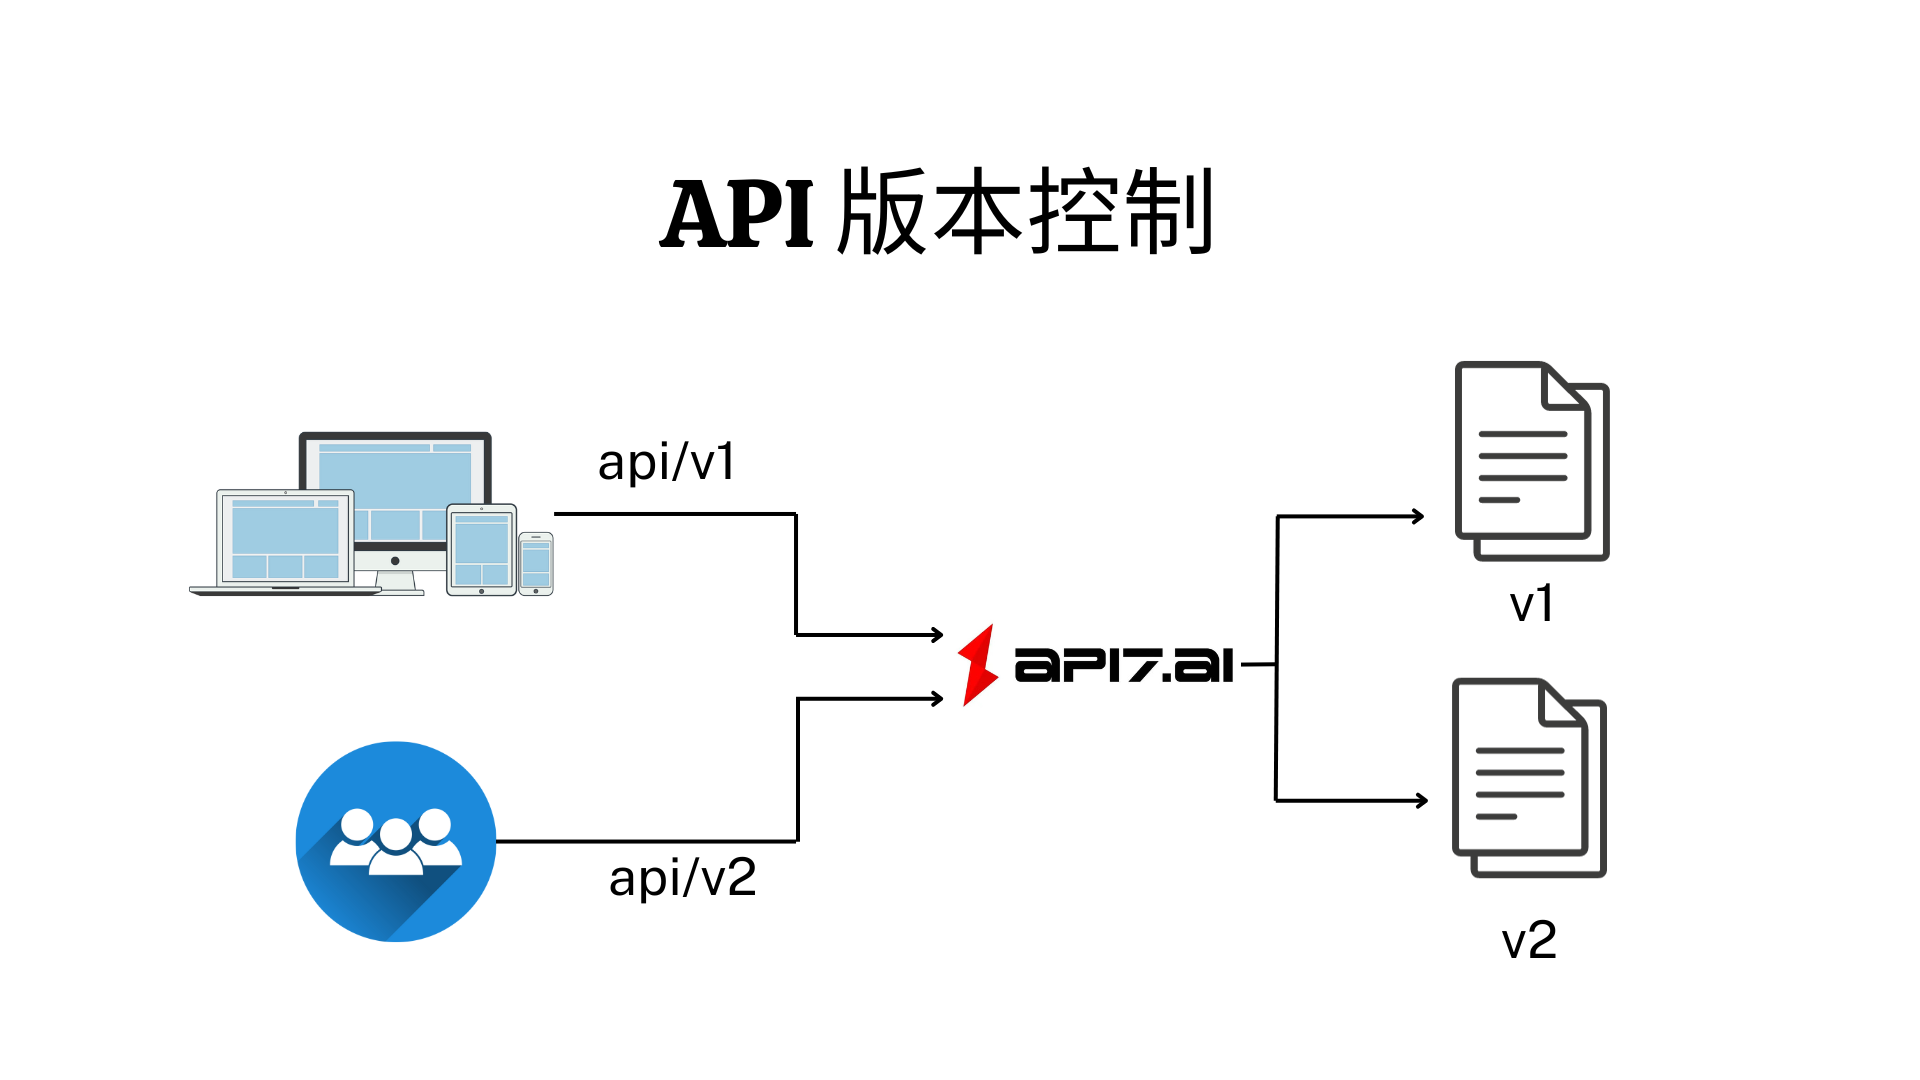 Version control by API7 Enterprise